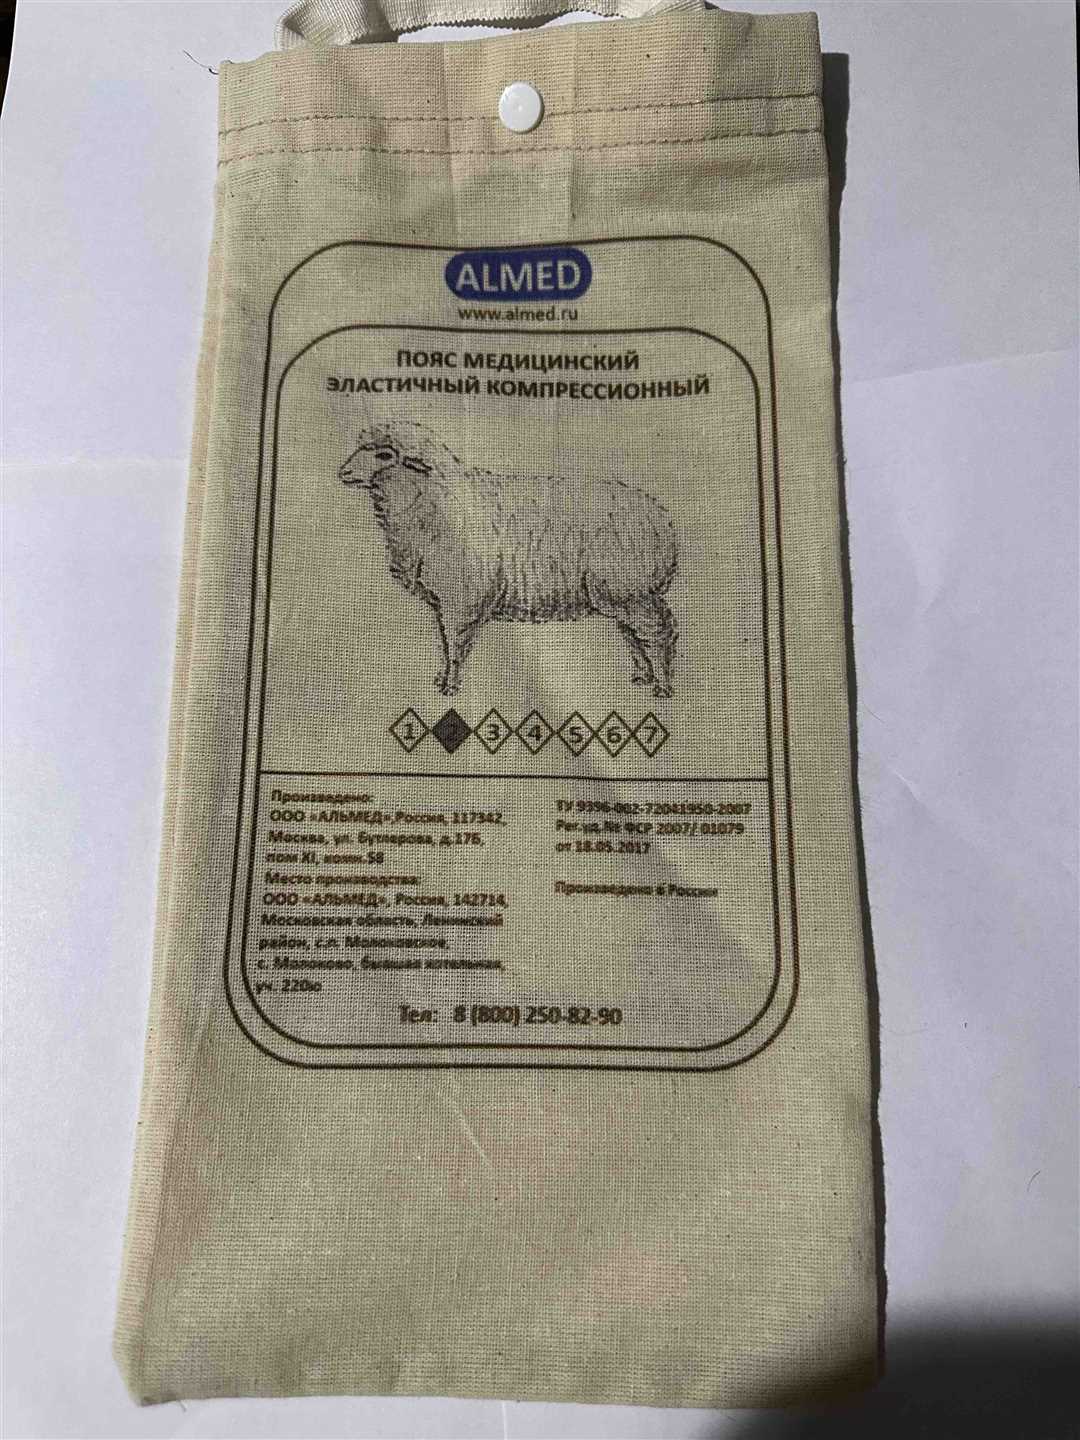 Альмед — пояс согревающий из шерсти верблюда — поддерживайте свое здоровье и комфорт в холодное время года!